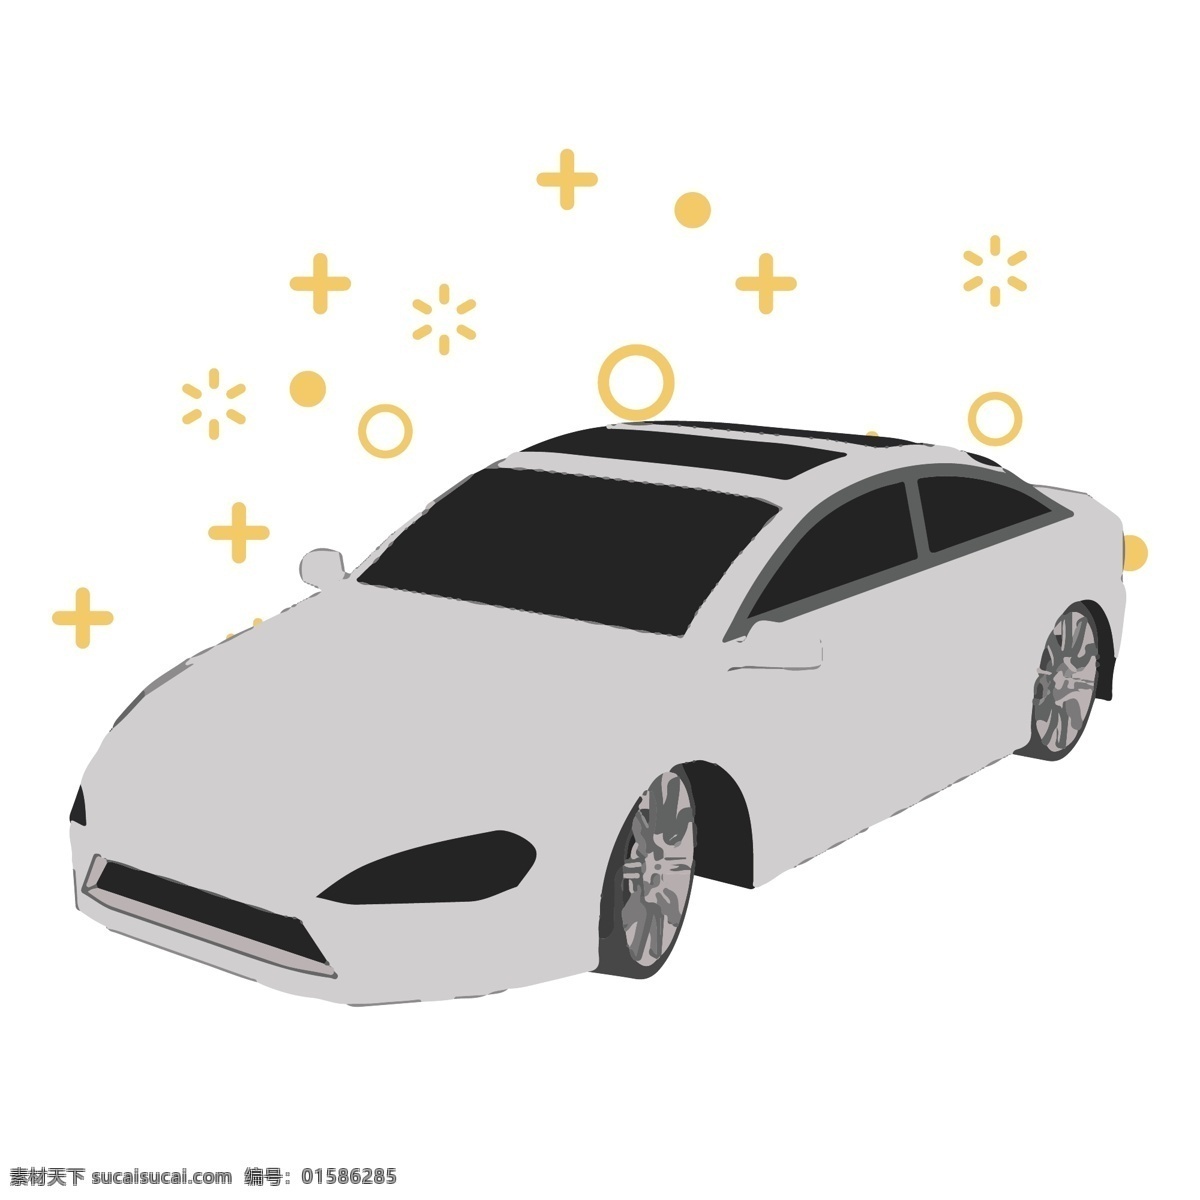 简约 汽车 玩具 模型 元素 交通工具 交通方式 物品 出行方式